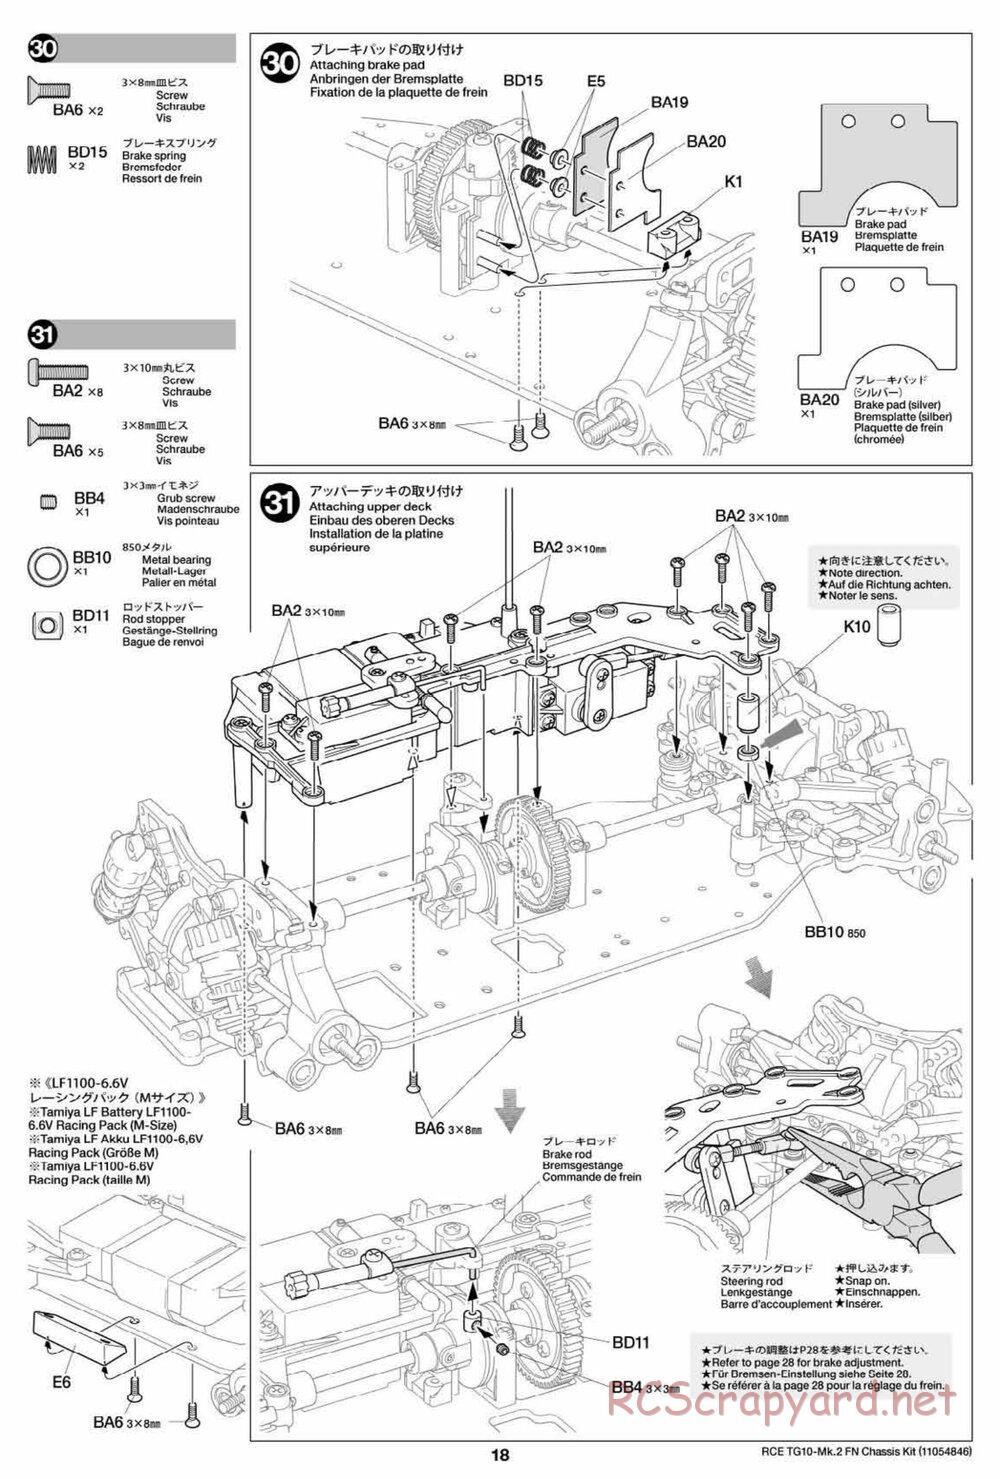 Tamiya - TG10 Mk.2 FN Chassis - Manual - Page 18